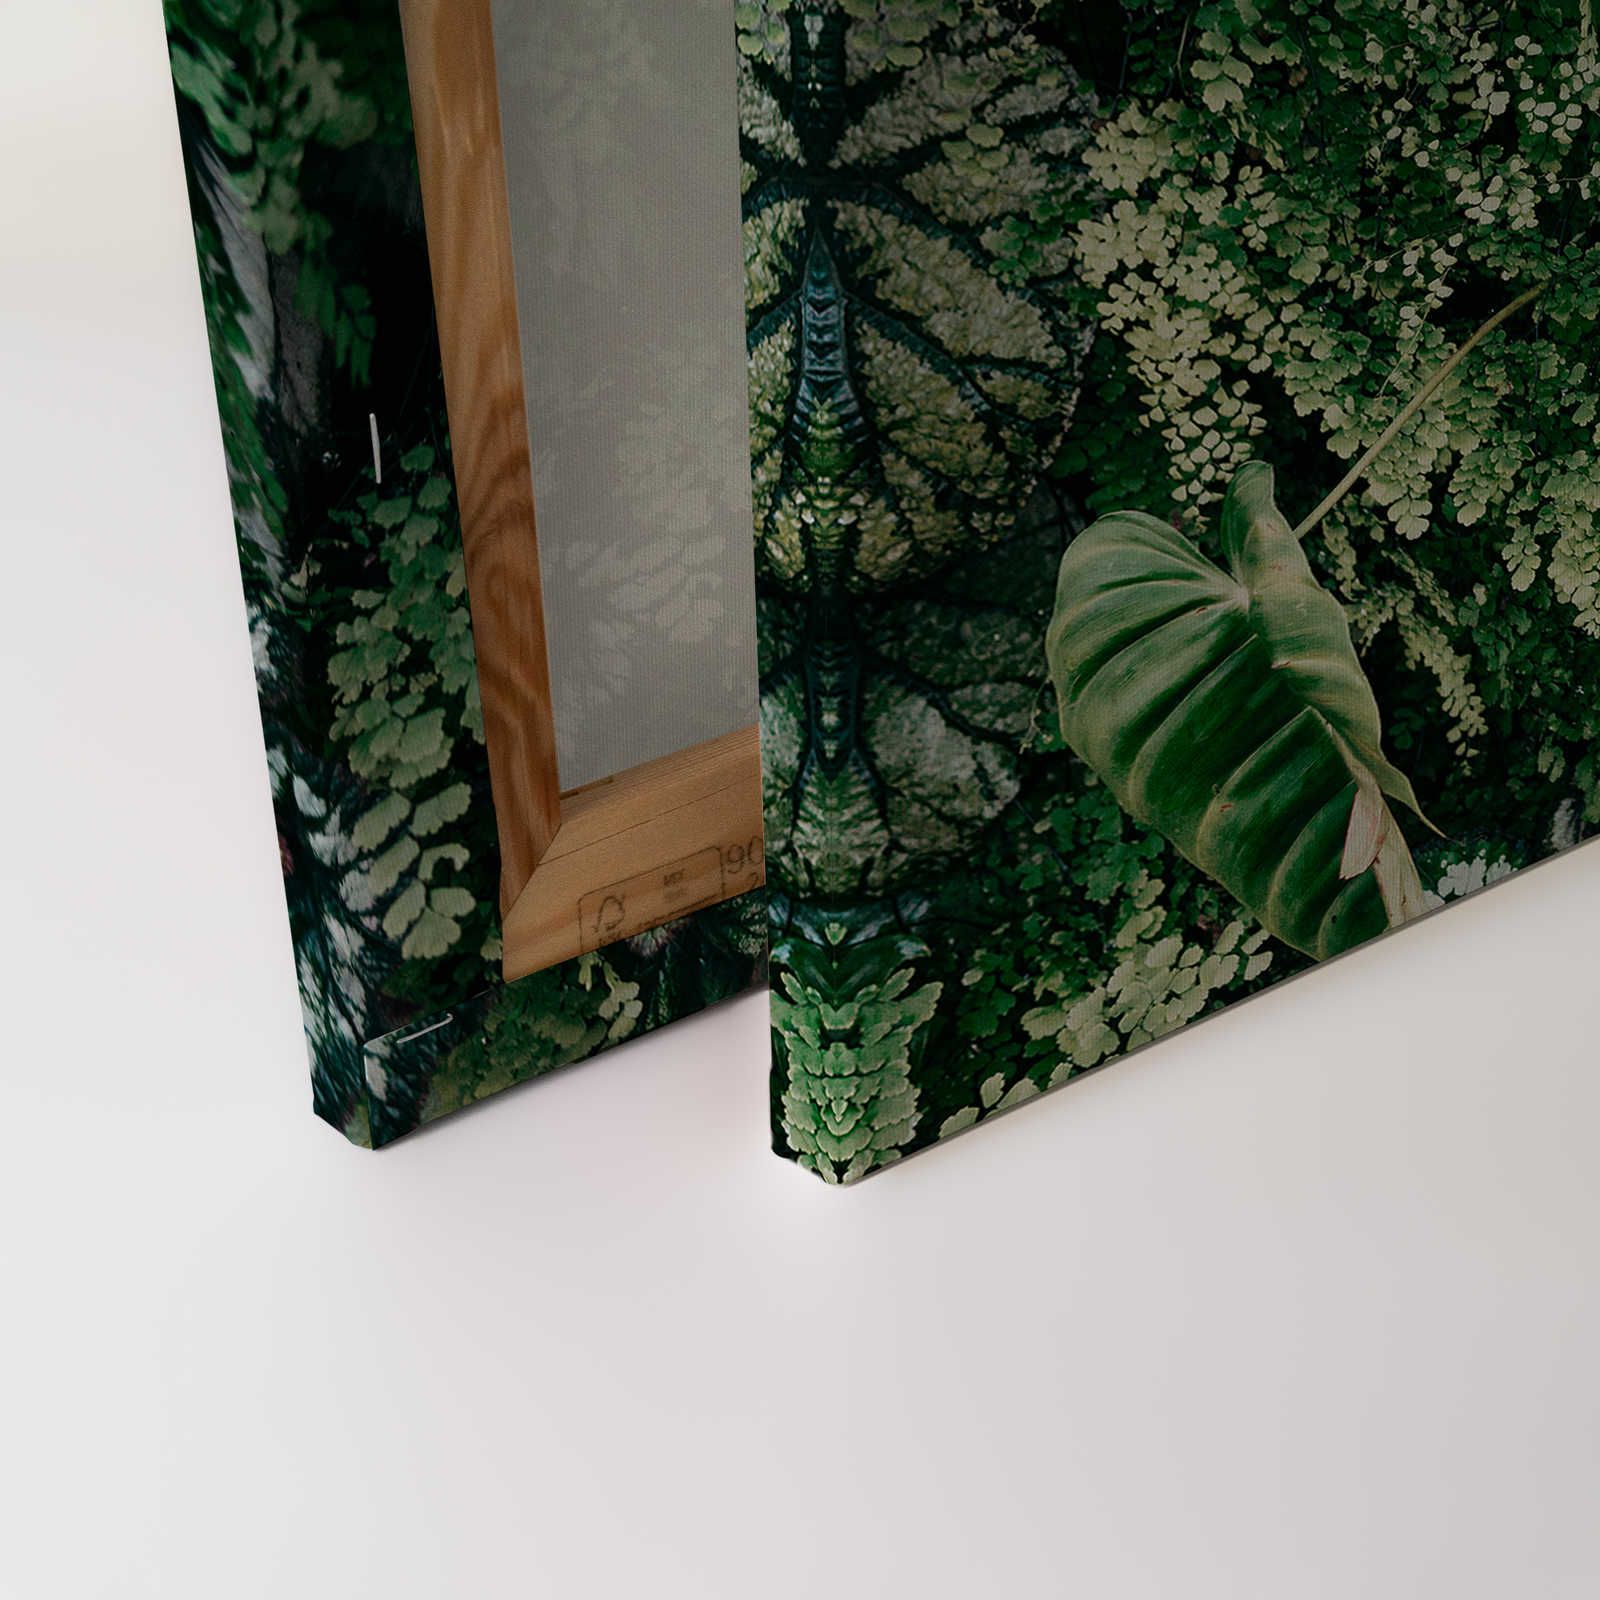             Deep Green 2 - Quadro su tela con foliage, felci e piante pendenti - 0,90 m x 0,60 m
        